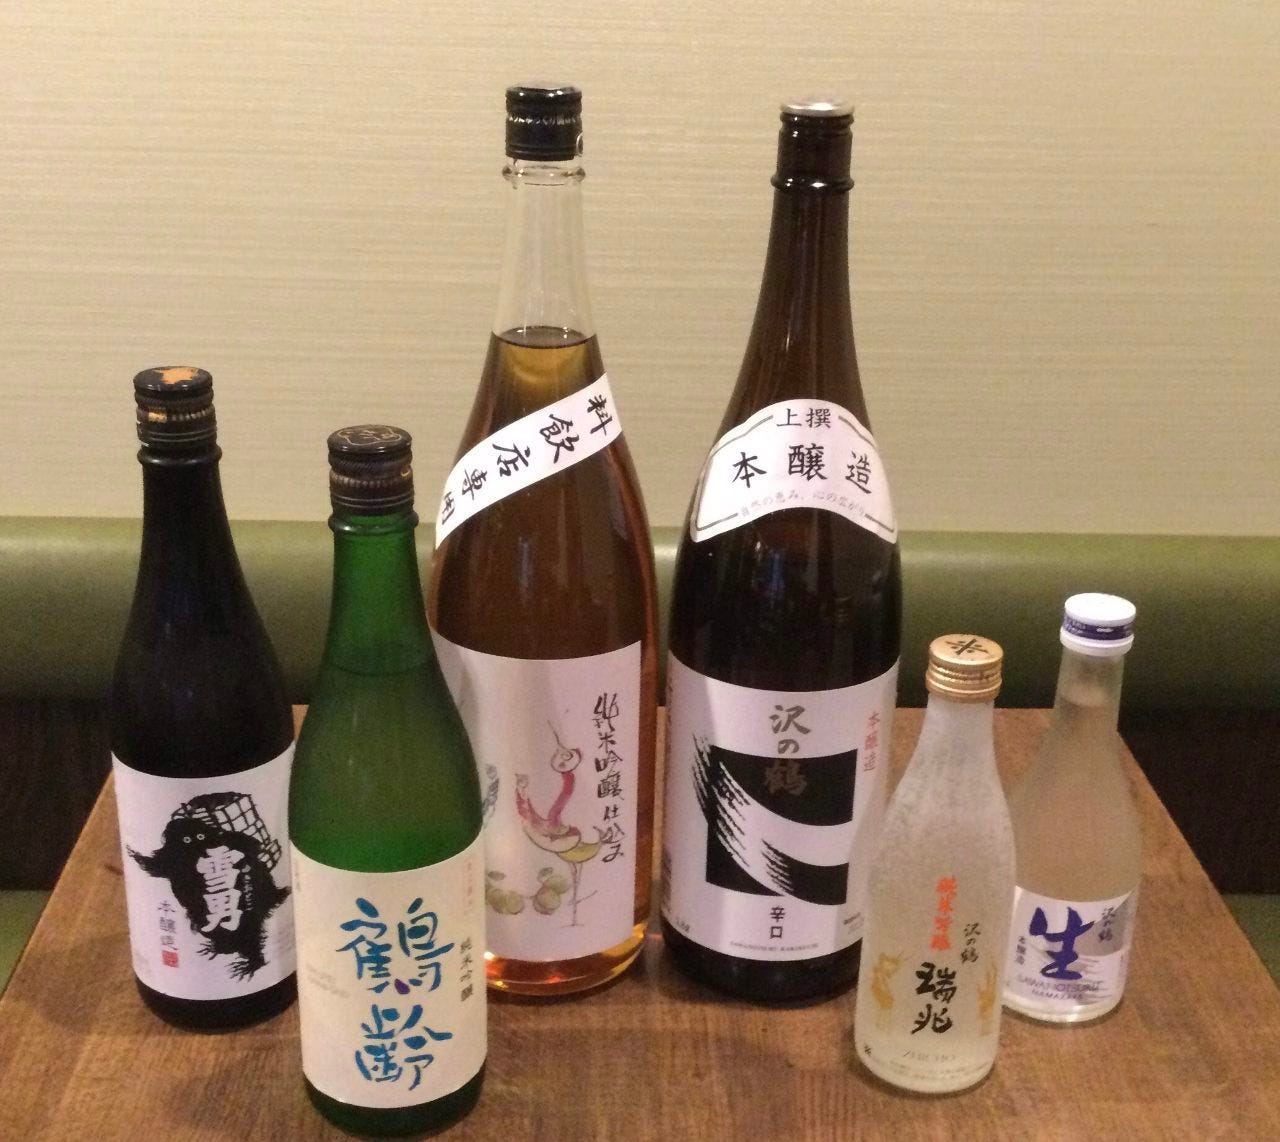 日本酒もさまざまな味わいの品揃え。